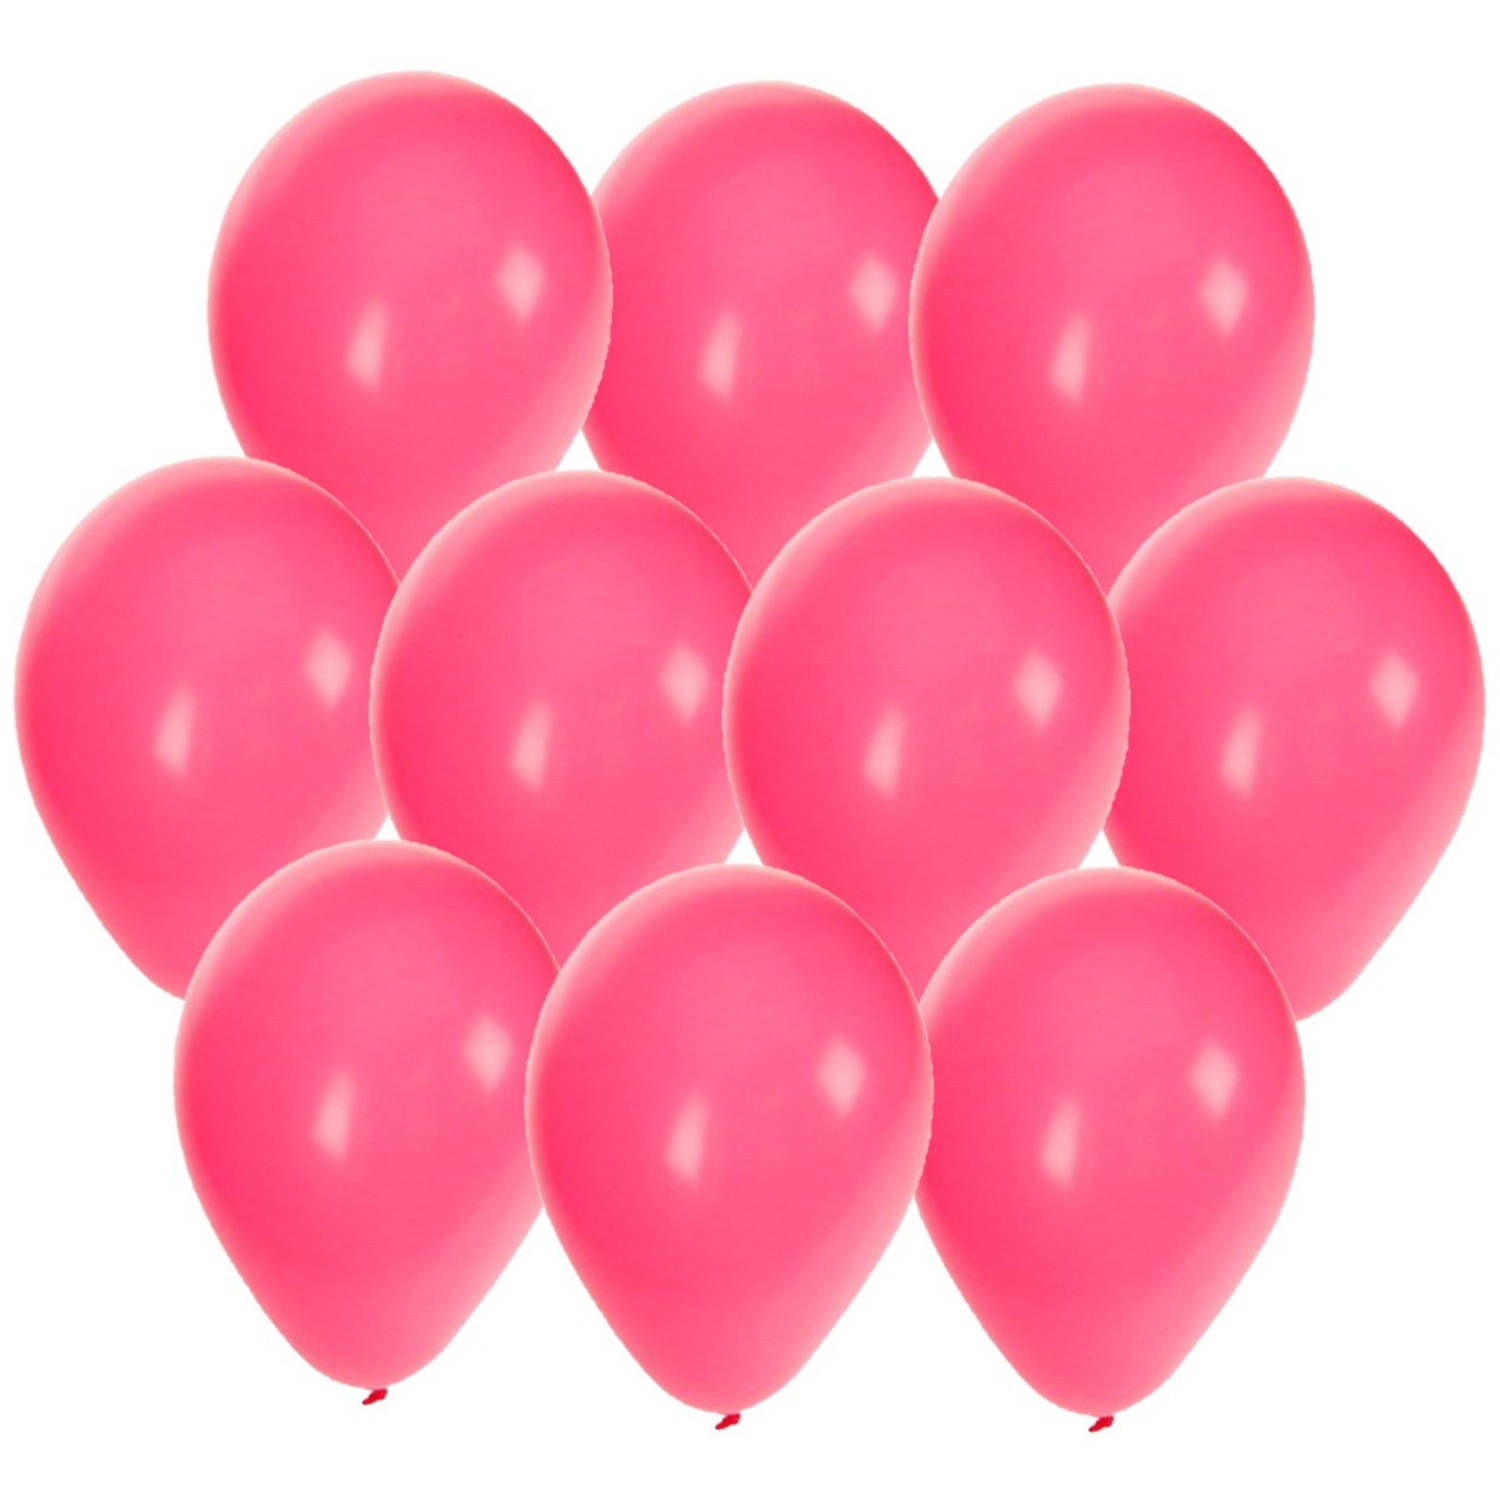 30x stuks Roze party ballonnen 27 cm - Ballonnen